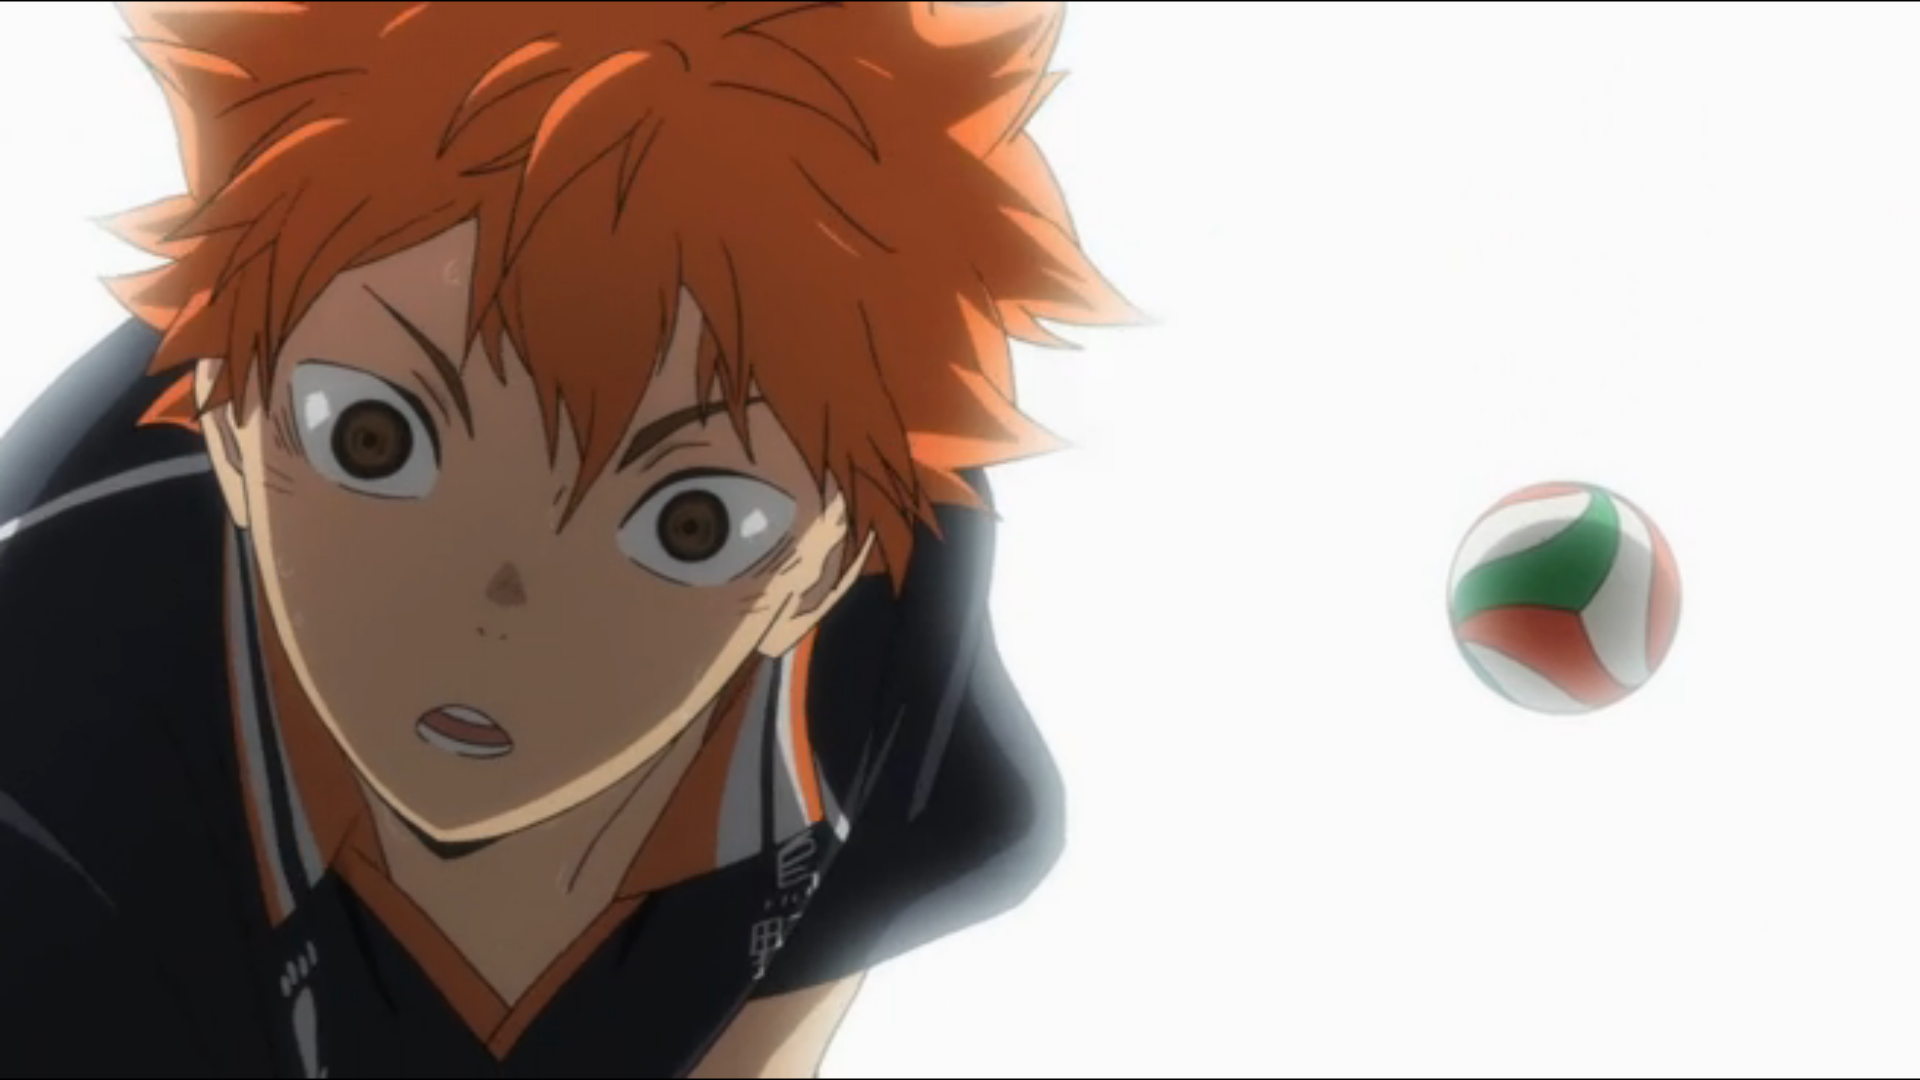 haikyuu!! #anime #karasuno #volleyball #sport #hinata #shoyo